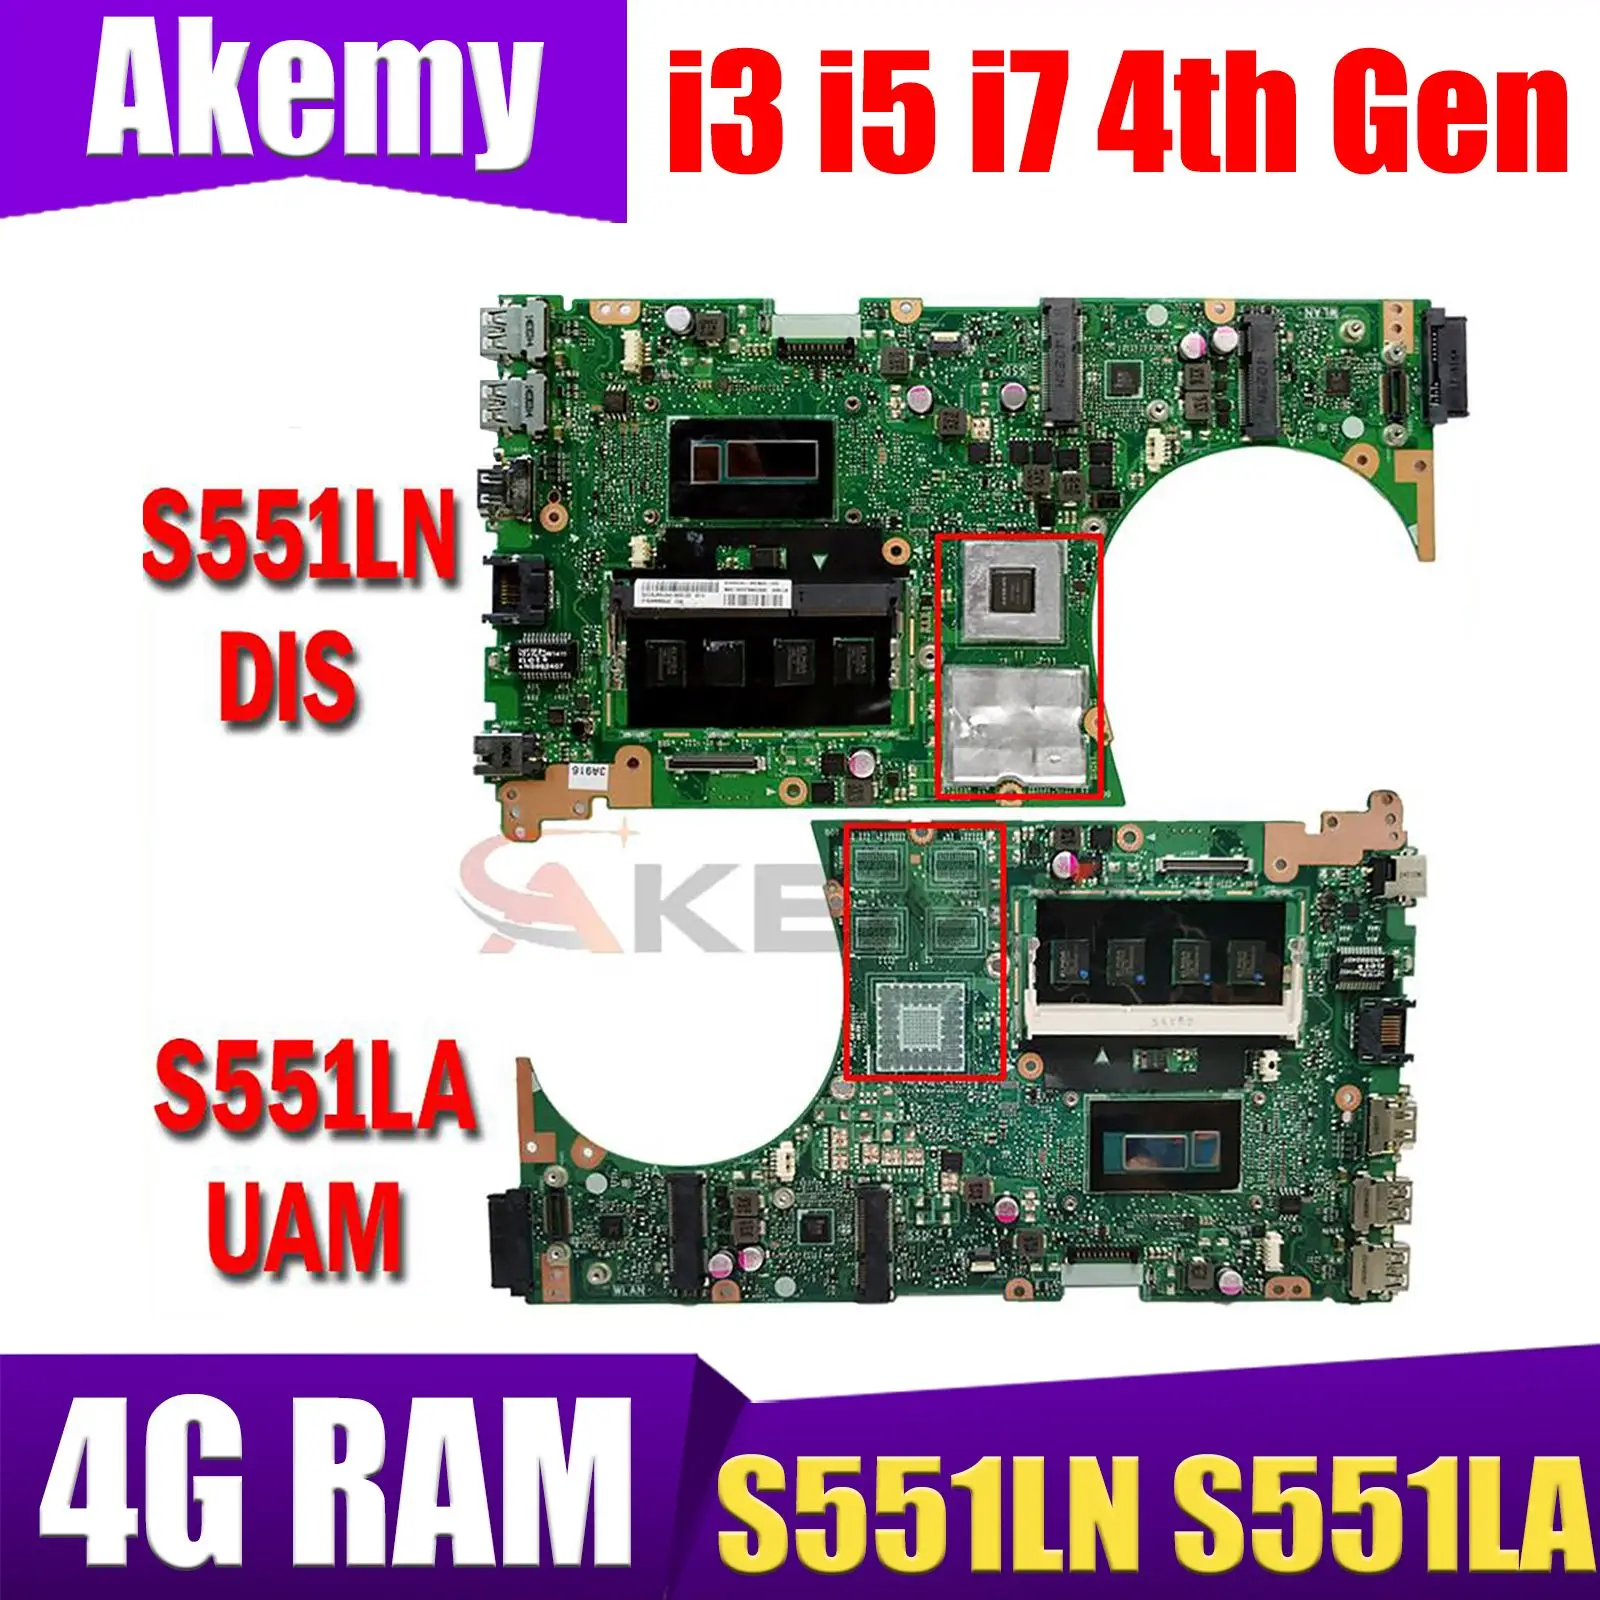 

S551LN S551LA 4GB RAM I3 I5 I7 CPU GT740M GT840M Mainboard for ASUS K551L K551LB K551LN S551L S551LB R553L Laptop Motherboard